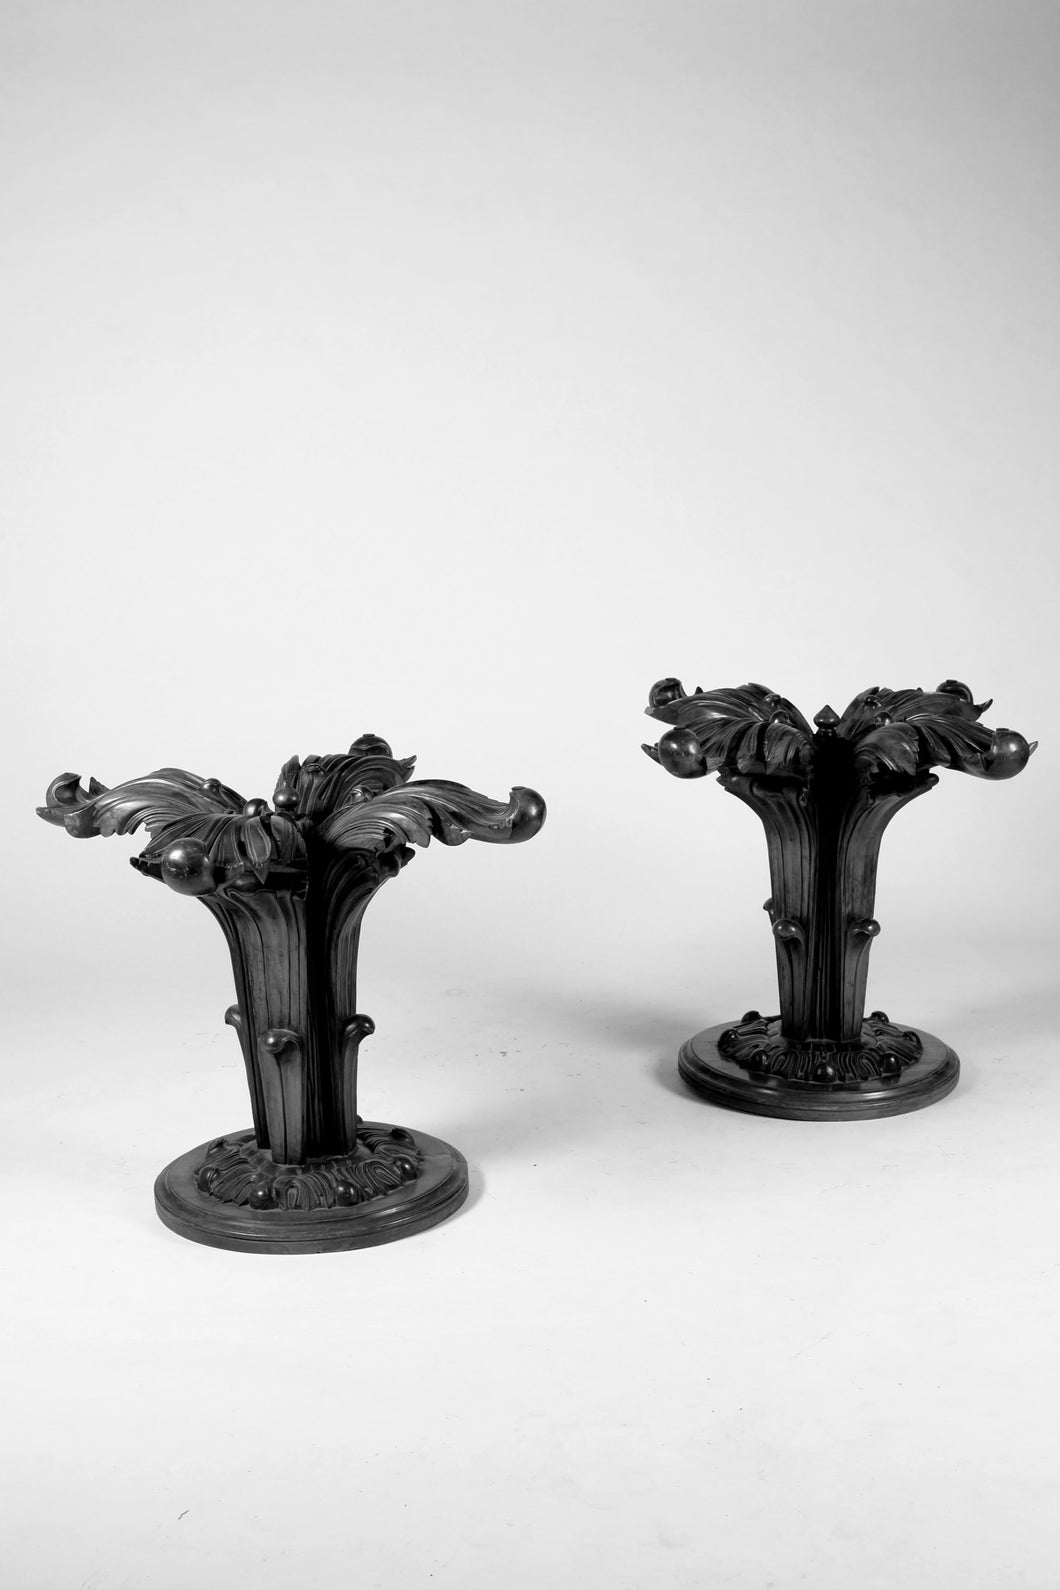 Pair of Ornate Pedestals